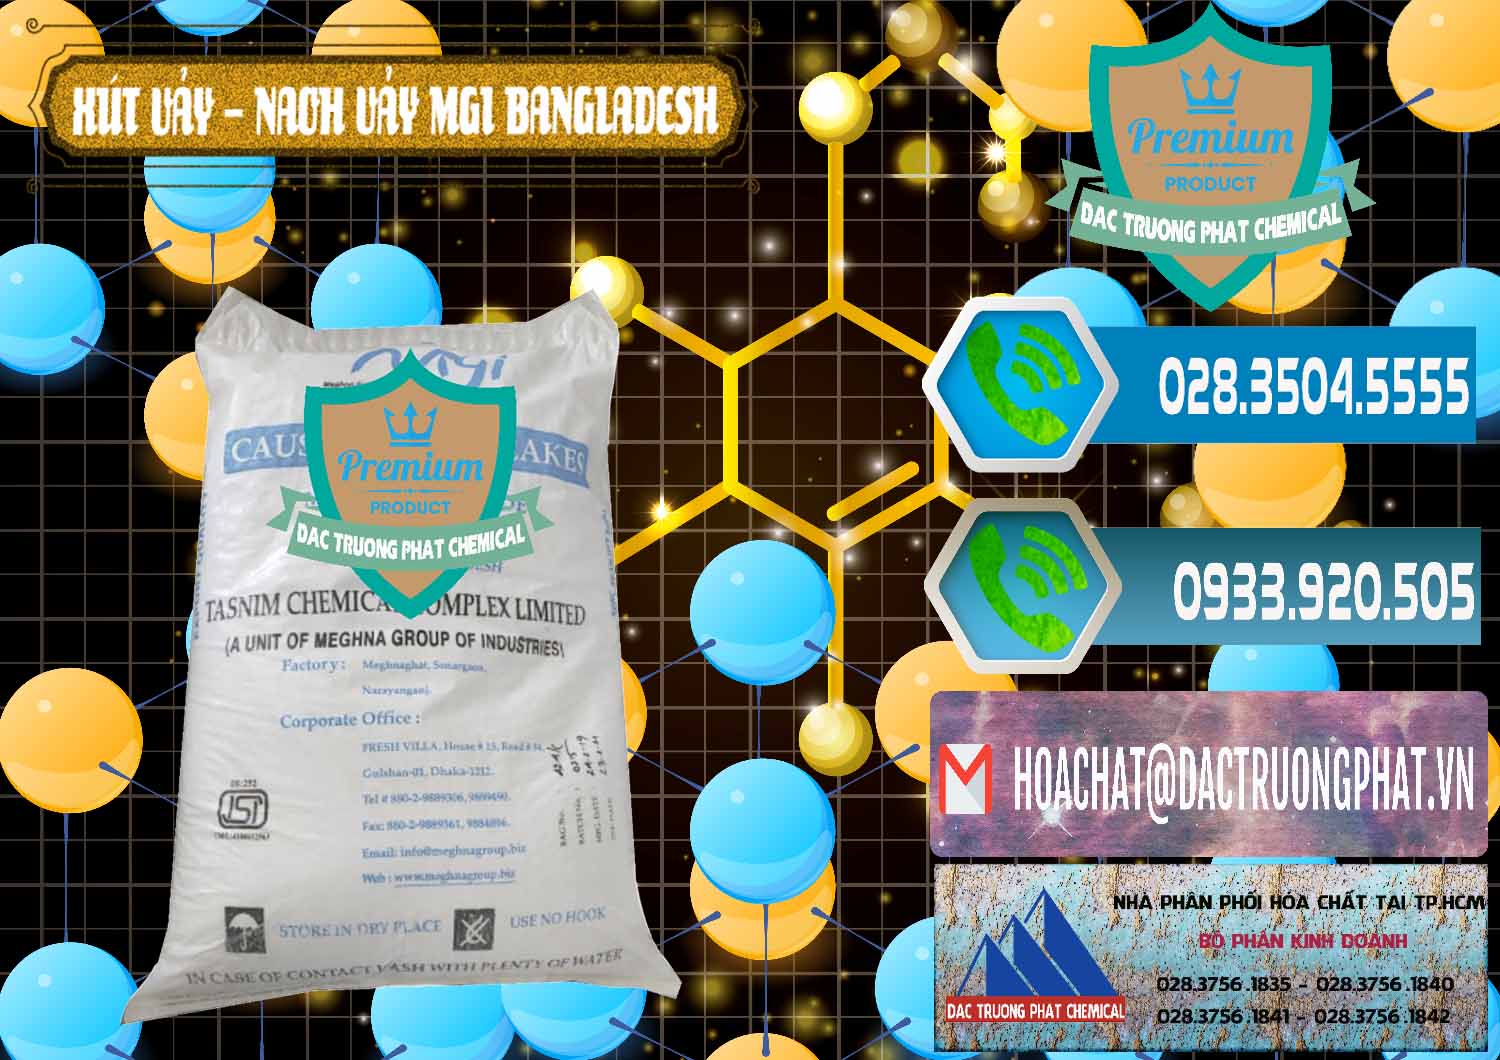 Công ty chuyên bán & phân phối Xút Vảy - NaOH Vảy 99% MGI Bangladesh - 0274 - Chuyên nhập khẩu - cung cấp hóa chất tại TP.HCM - congtyhoachat.net